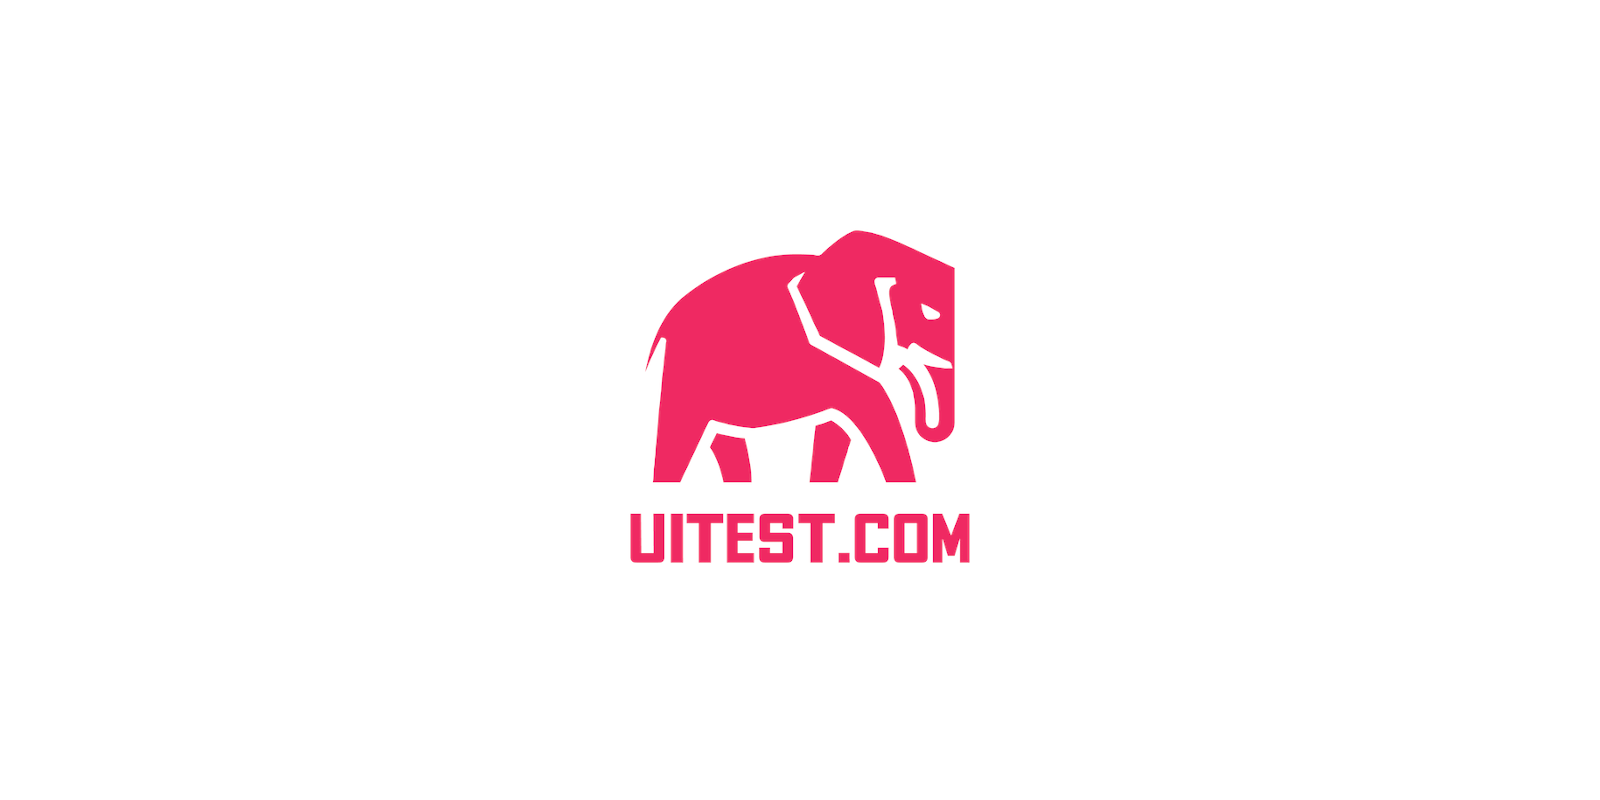 UITest.com